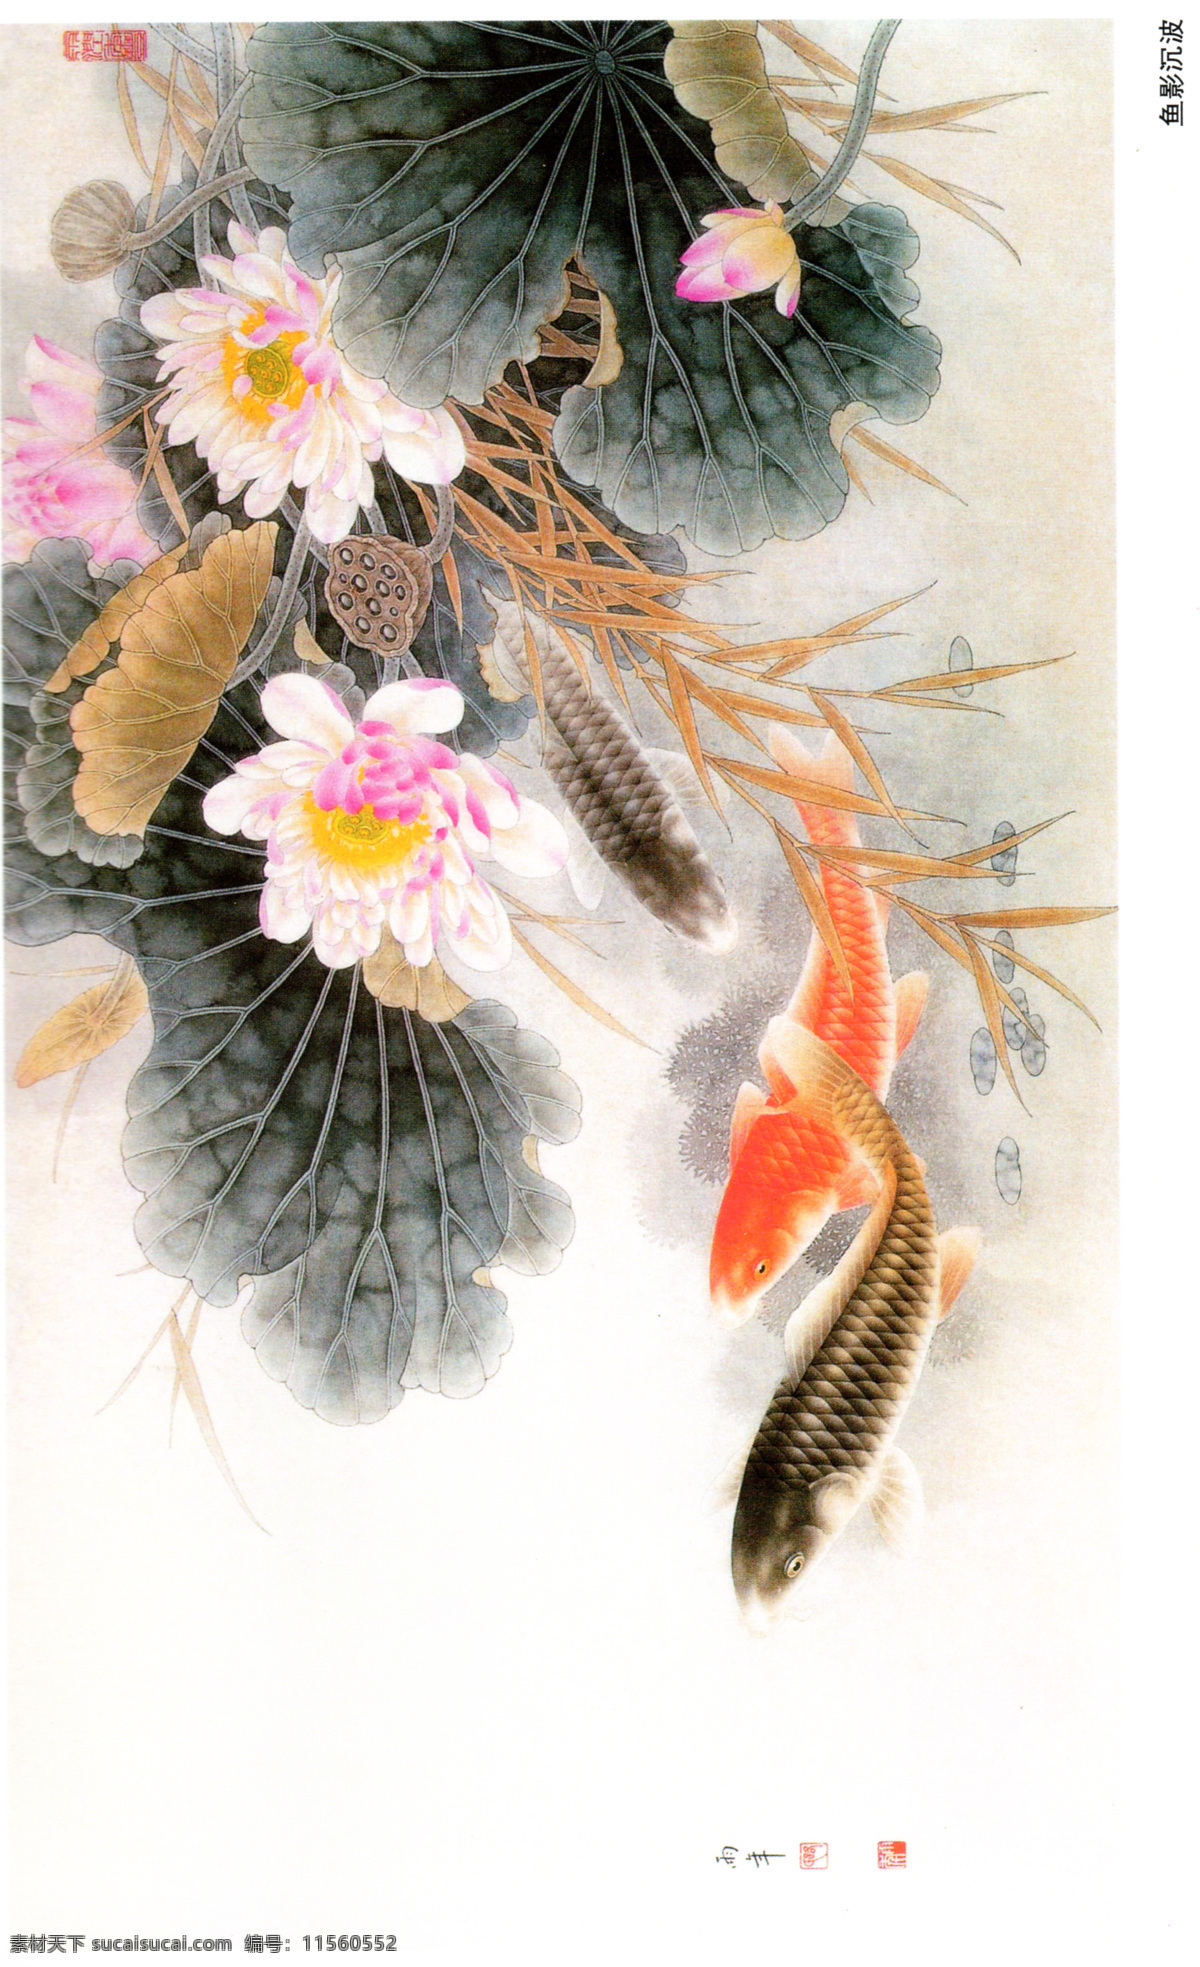 国画 油画 风景画 荷叶 鲤鱼画面 文化艺术 传统文化